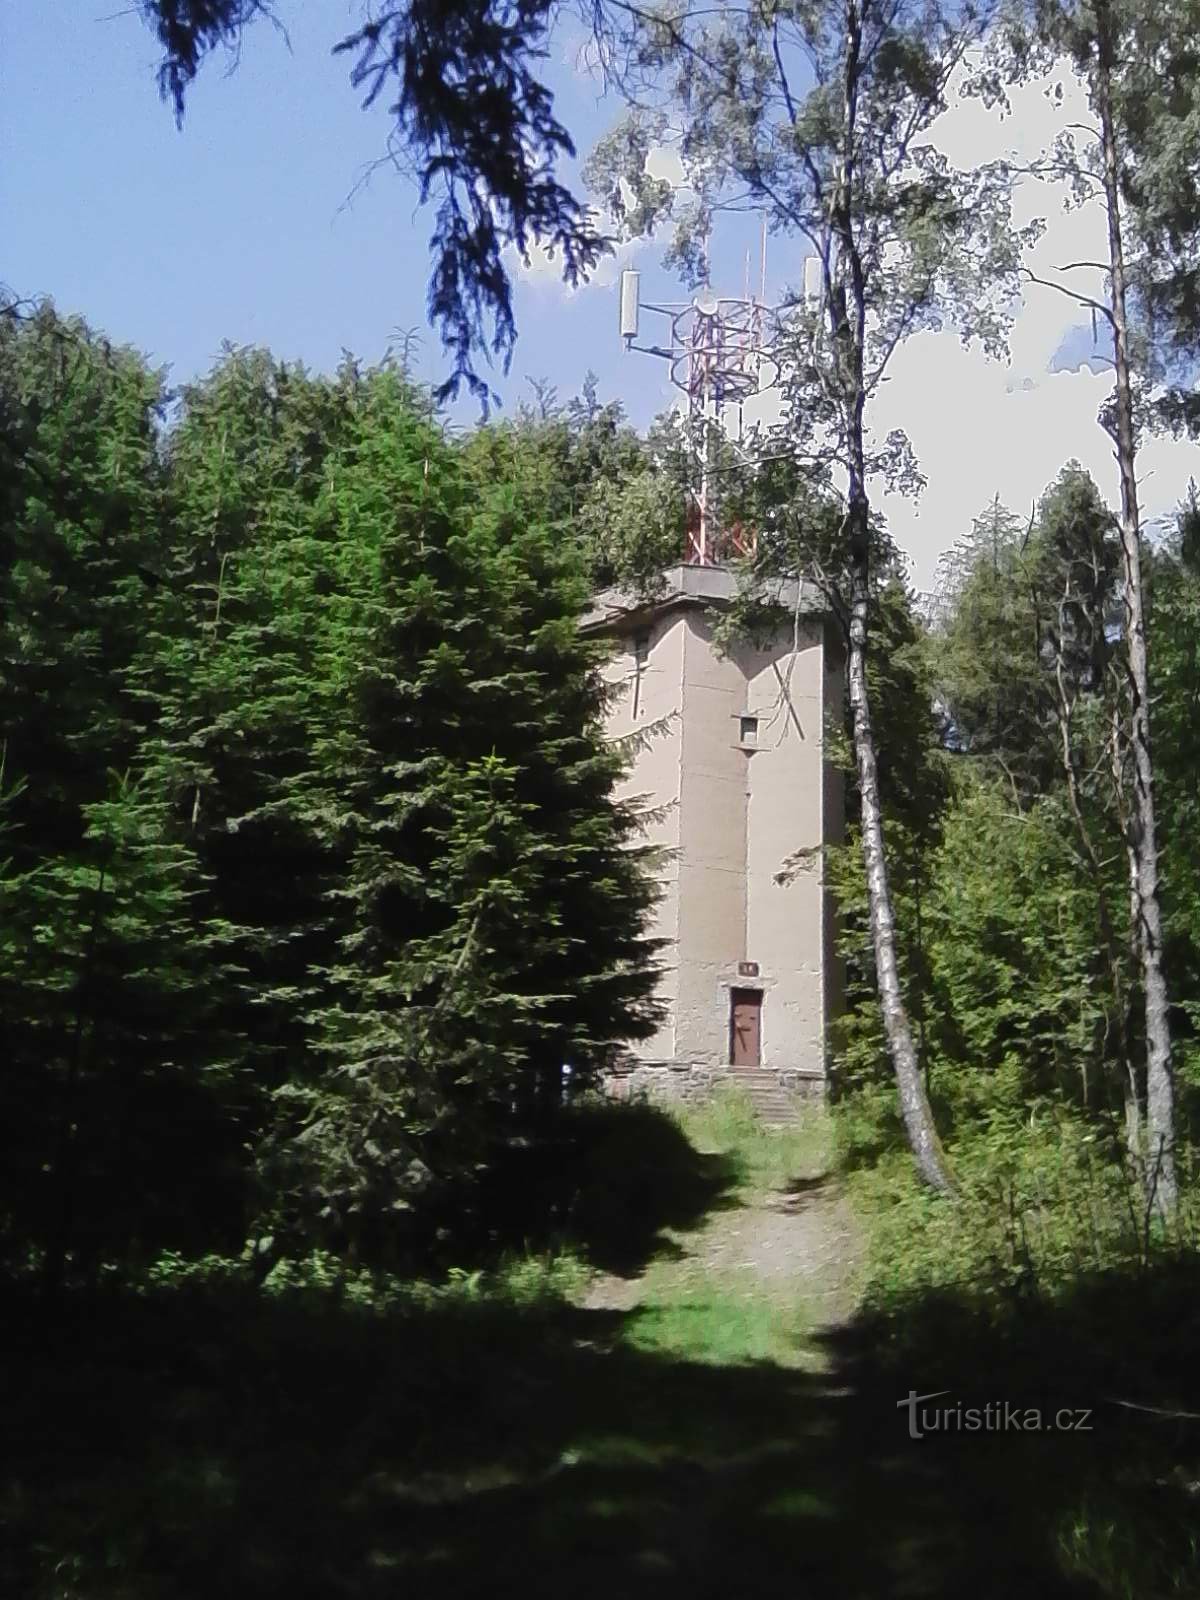 0. Rozhledna na vrchu Svidník u Černovic - 739 m.n.m. Bohužel ji už přerostly stromy.